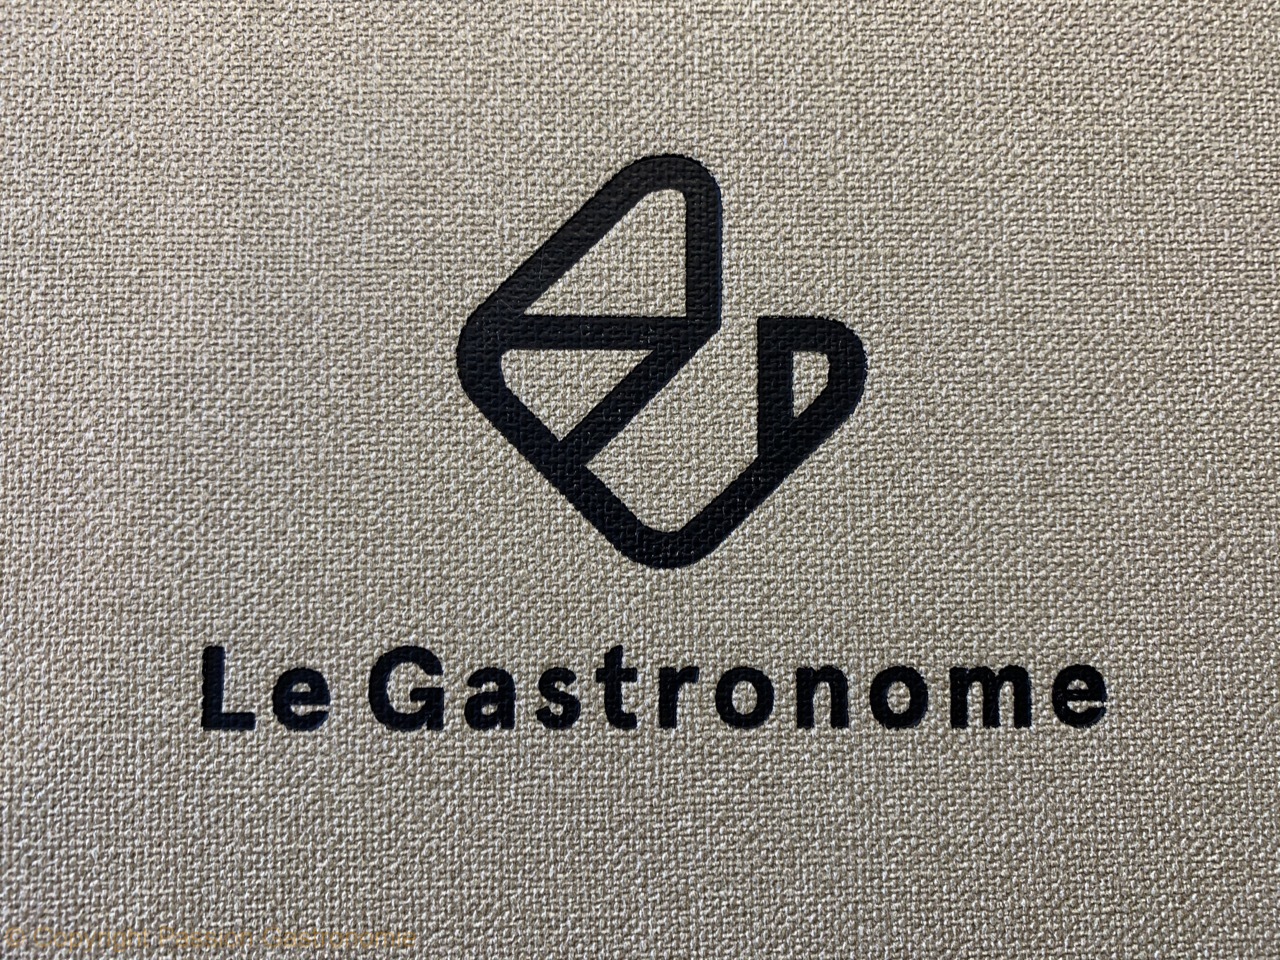 Restaurant Le Gastronome - Le logo